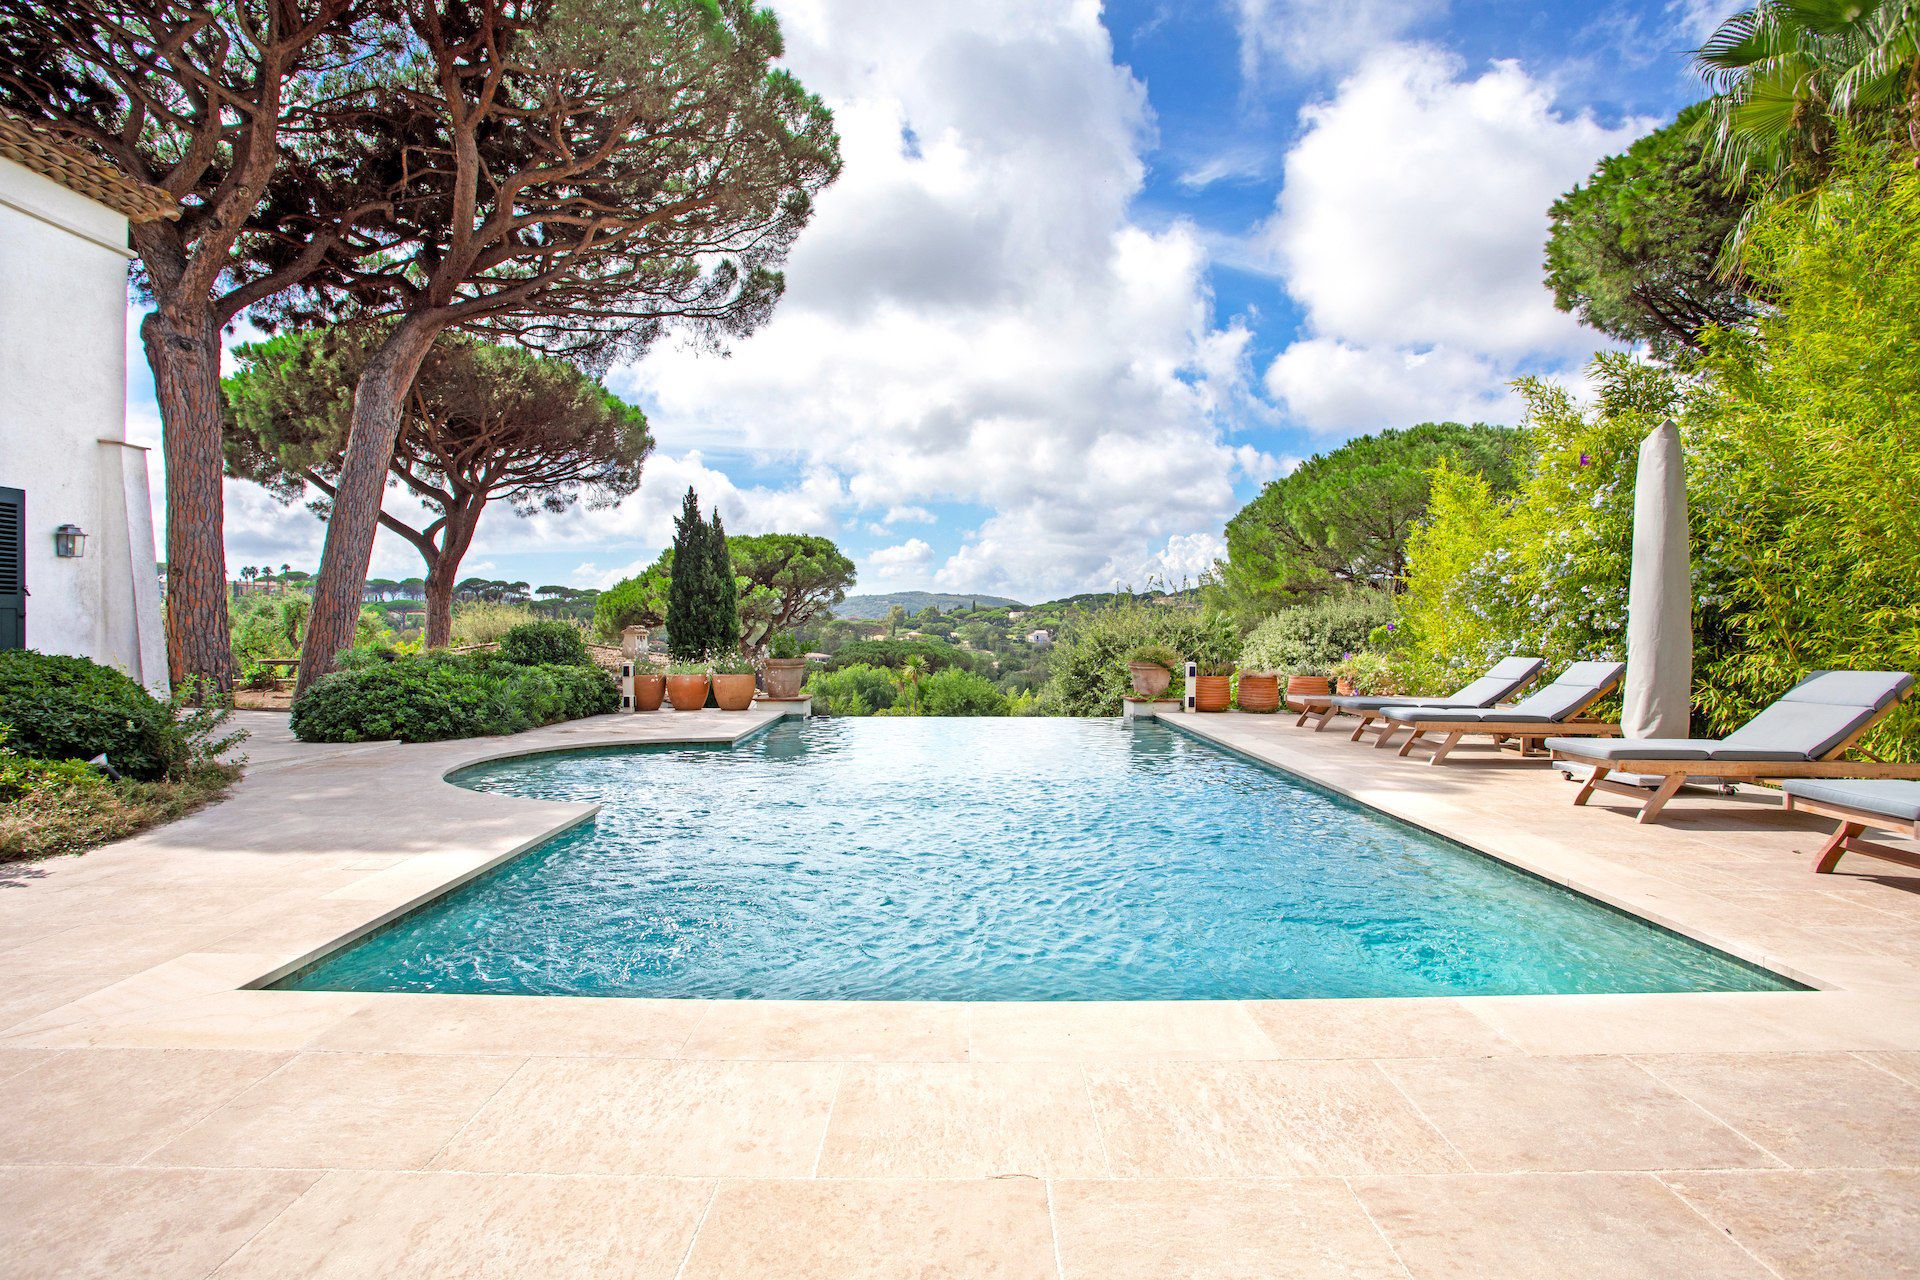 Méditerranée Location Villa with Private pool in Saint Tropez, Côte d'Azur